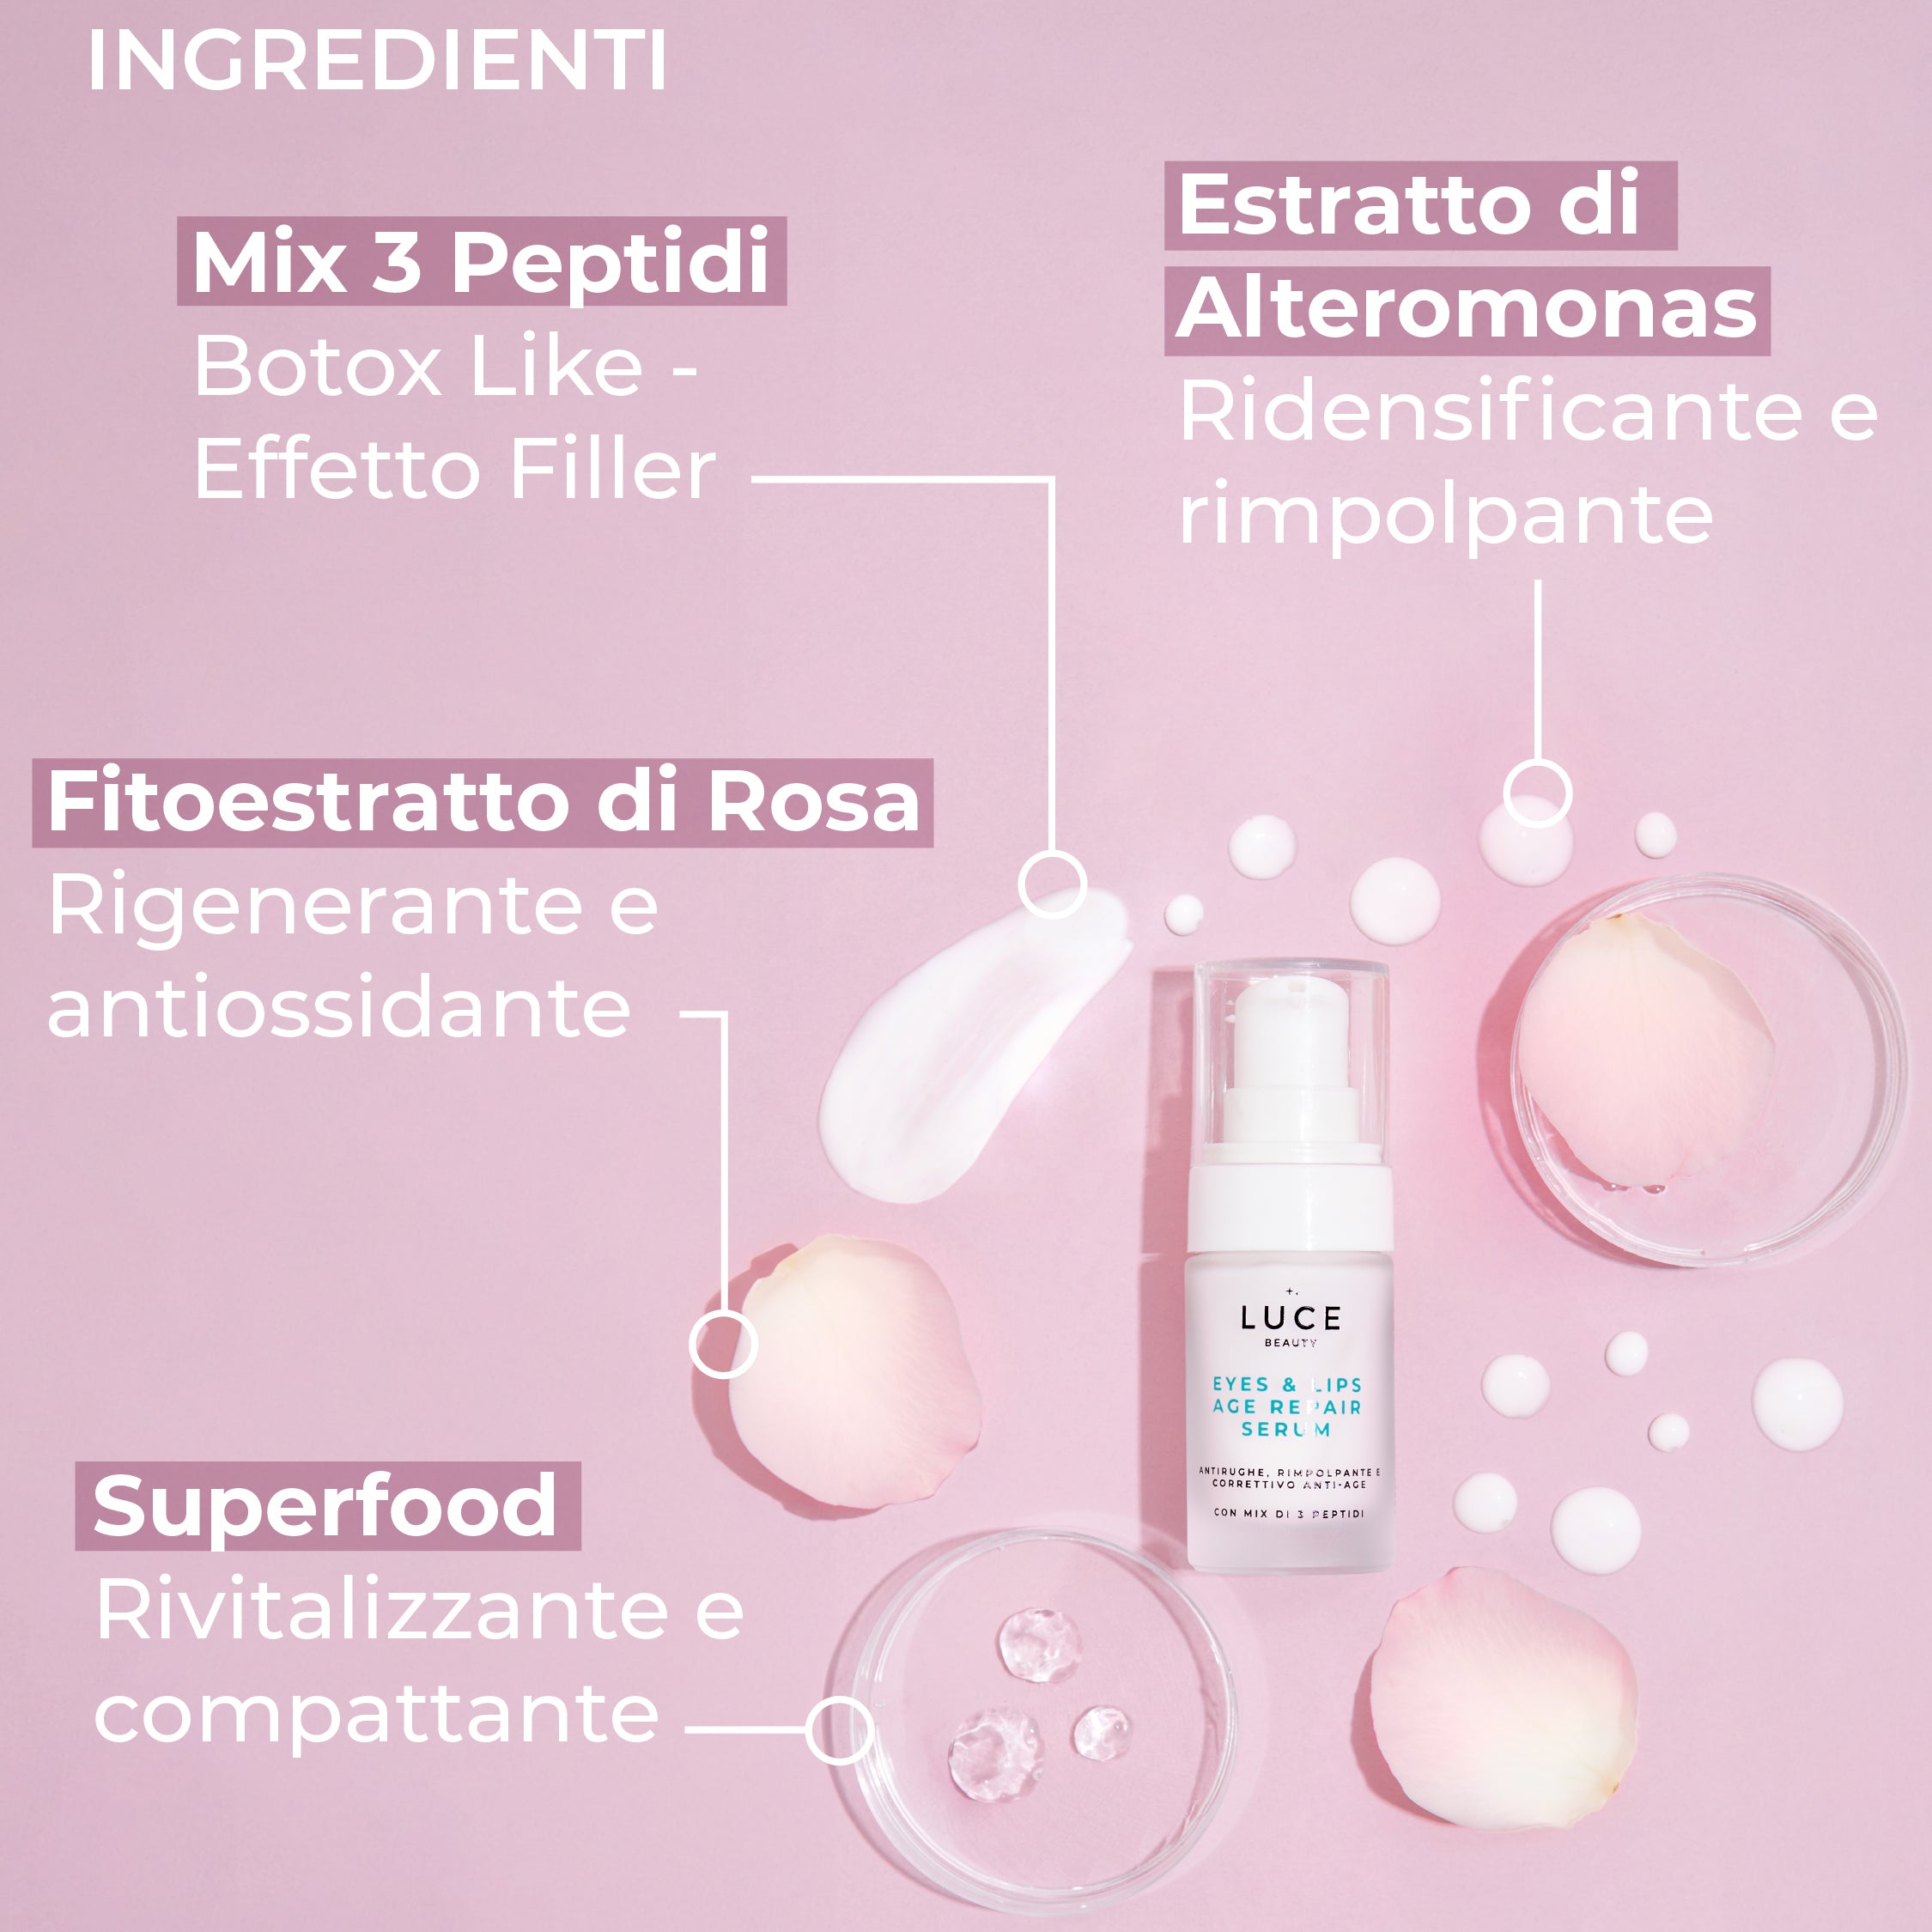 Eyes & Lips Age Repair Serum - Ingredienti - peptidi, fitoestratto di rosa, estratto di altermonas - made in italy - Luce Beauty by Alessia marcuzzi